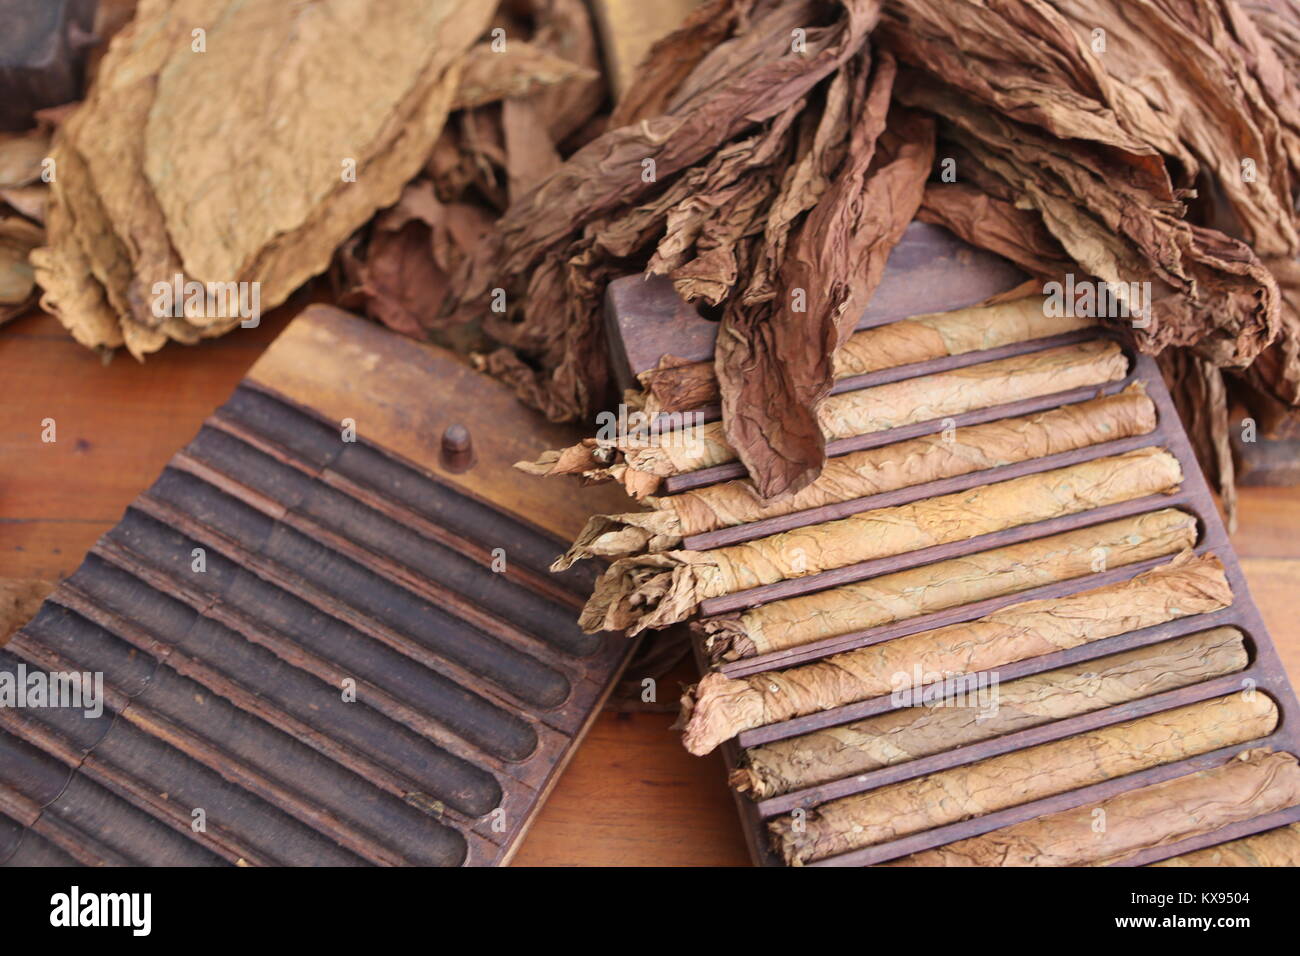 Zigarren Herstellung in Kuba - Zigarren Herstellung in Kuba Stockfoto